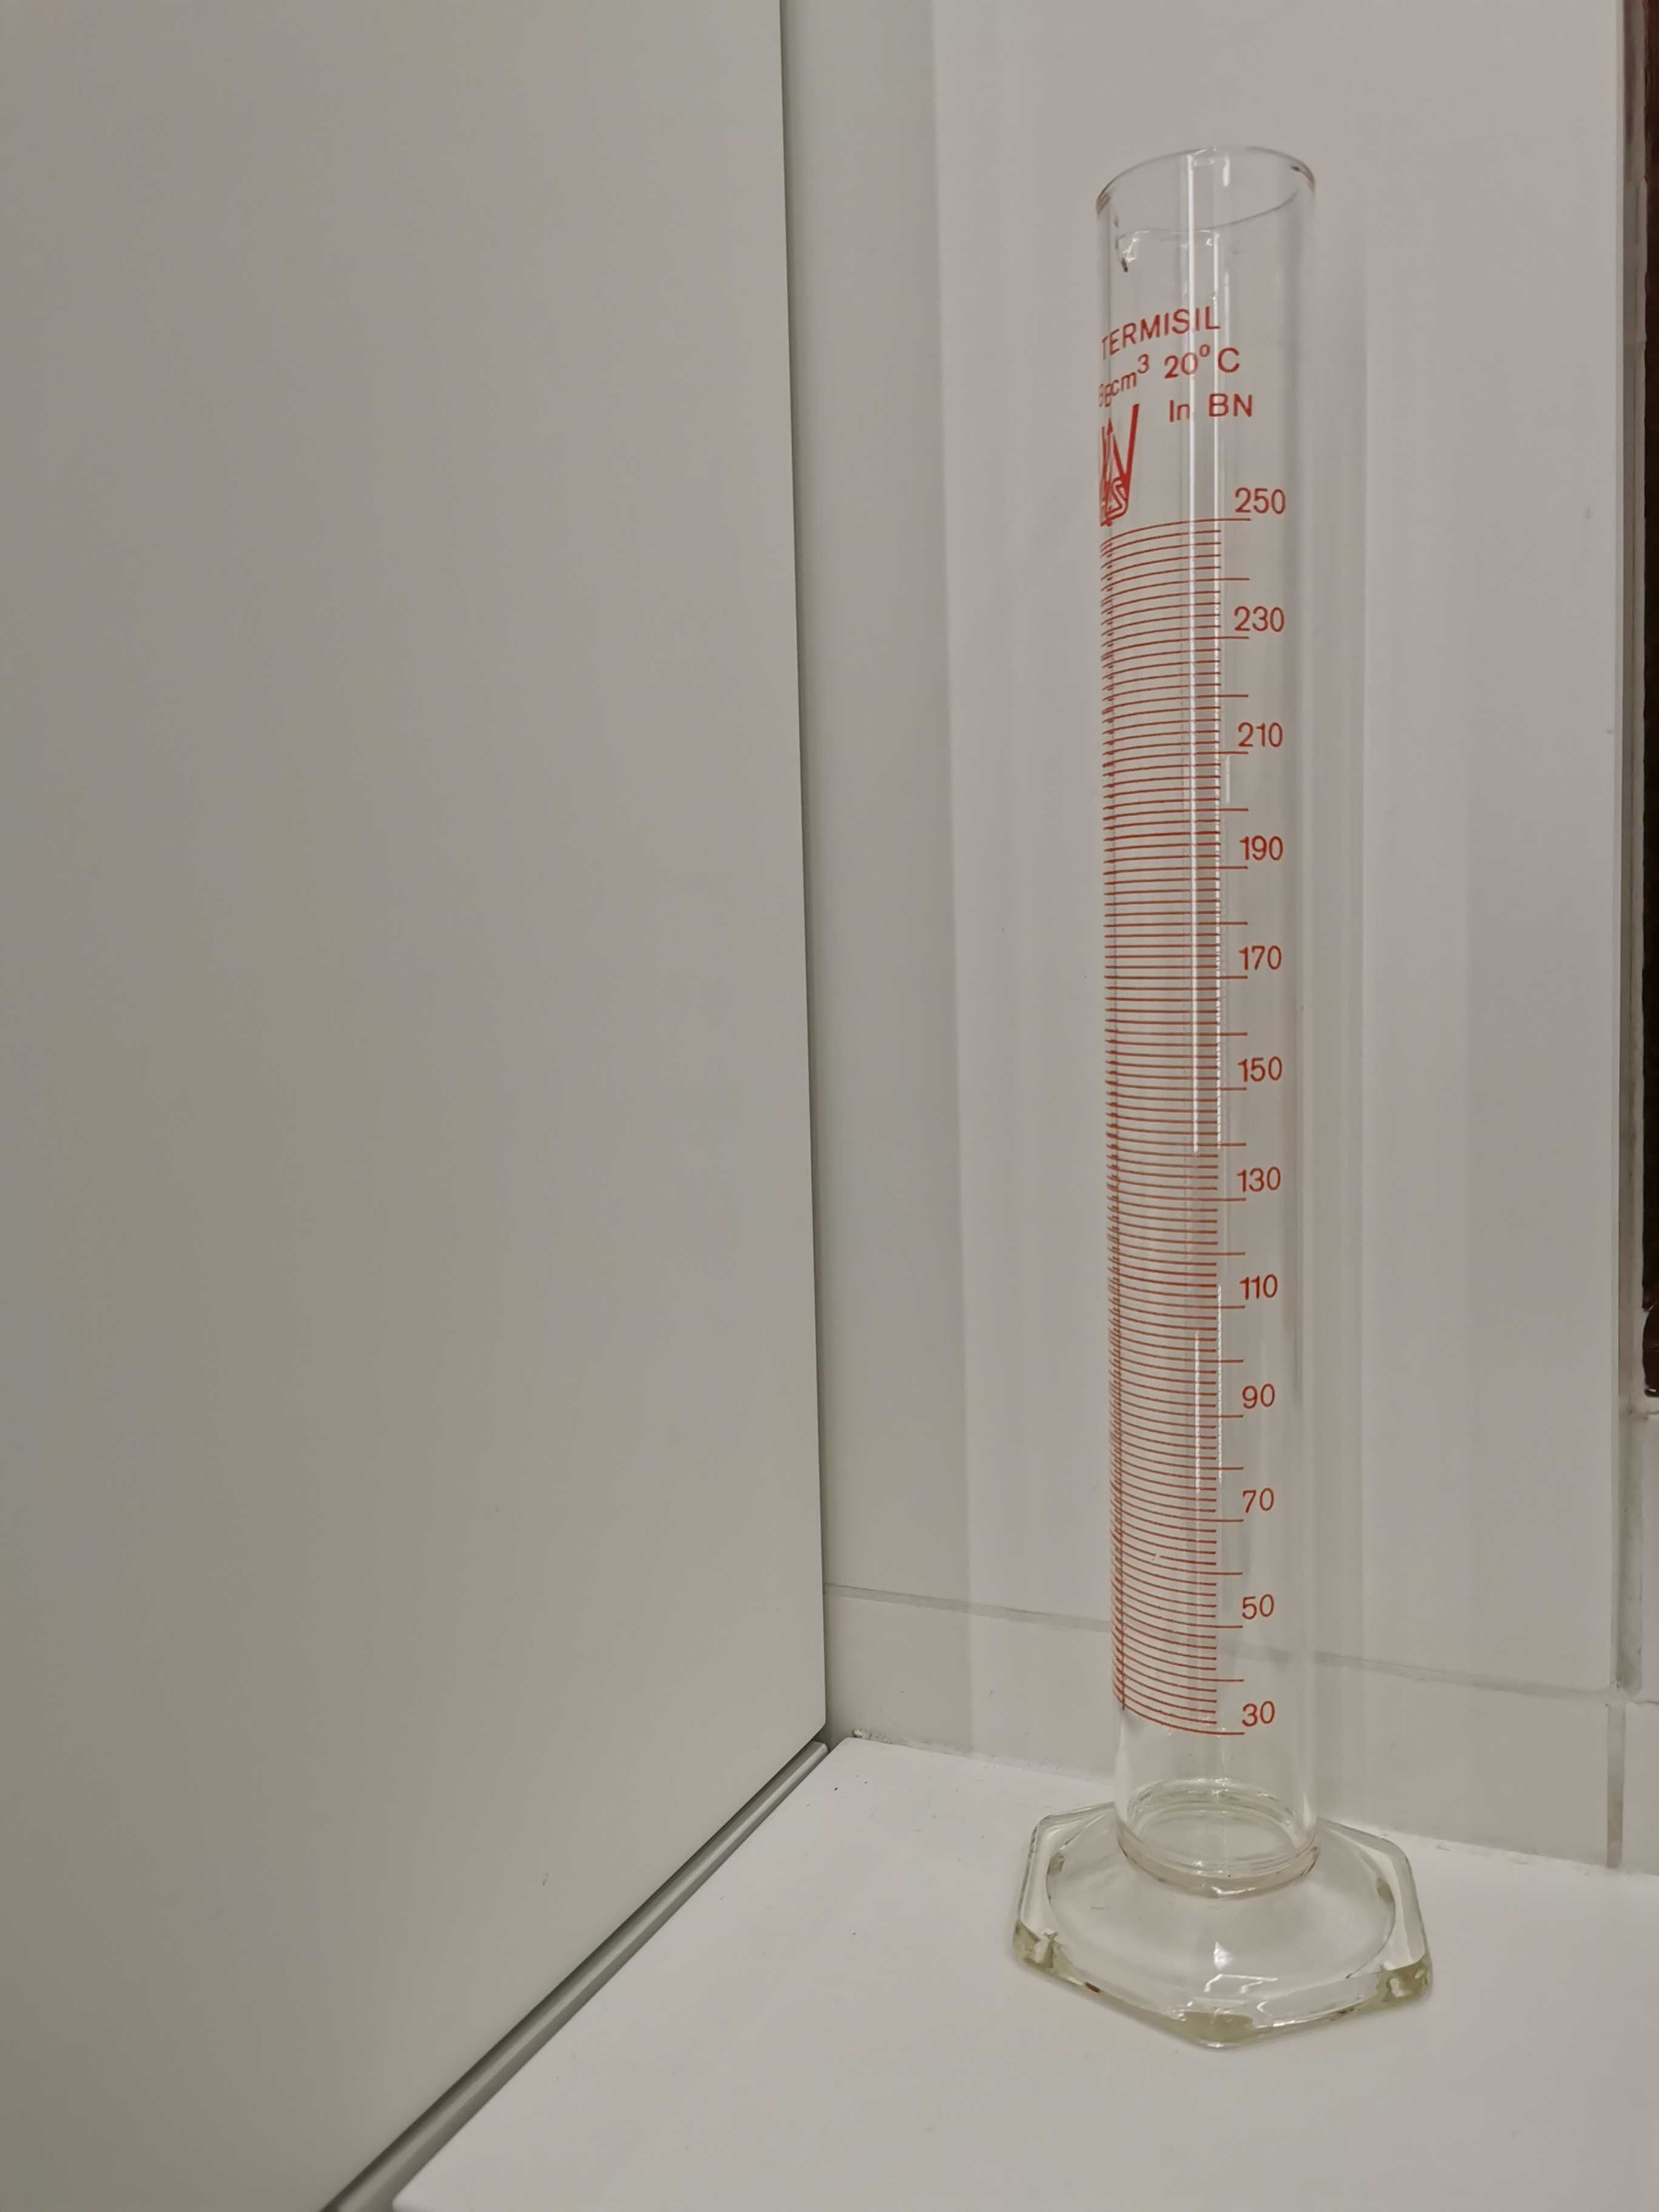 Cylinder laboratoryjny szklany - 250 ml